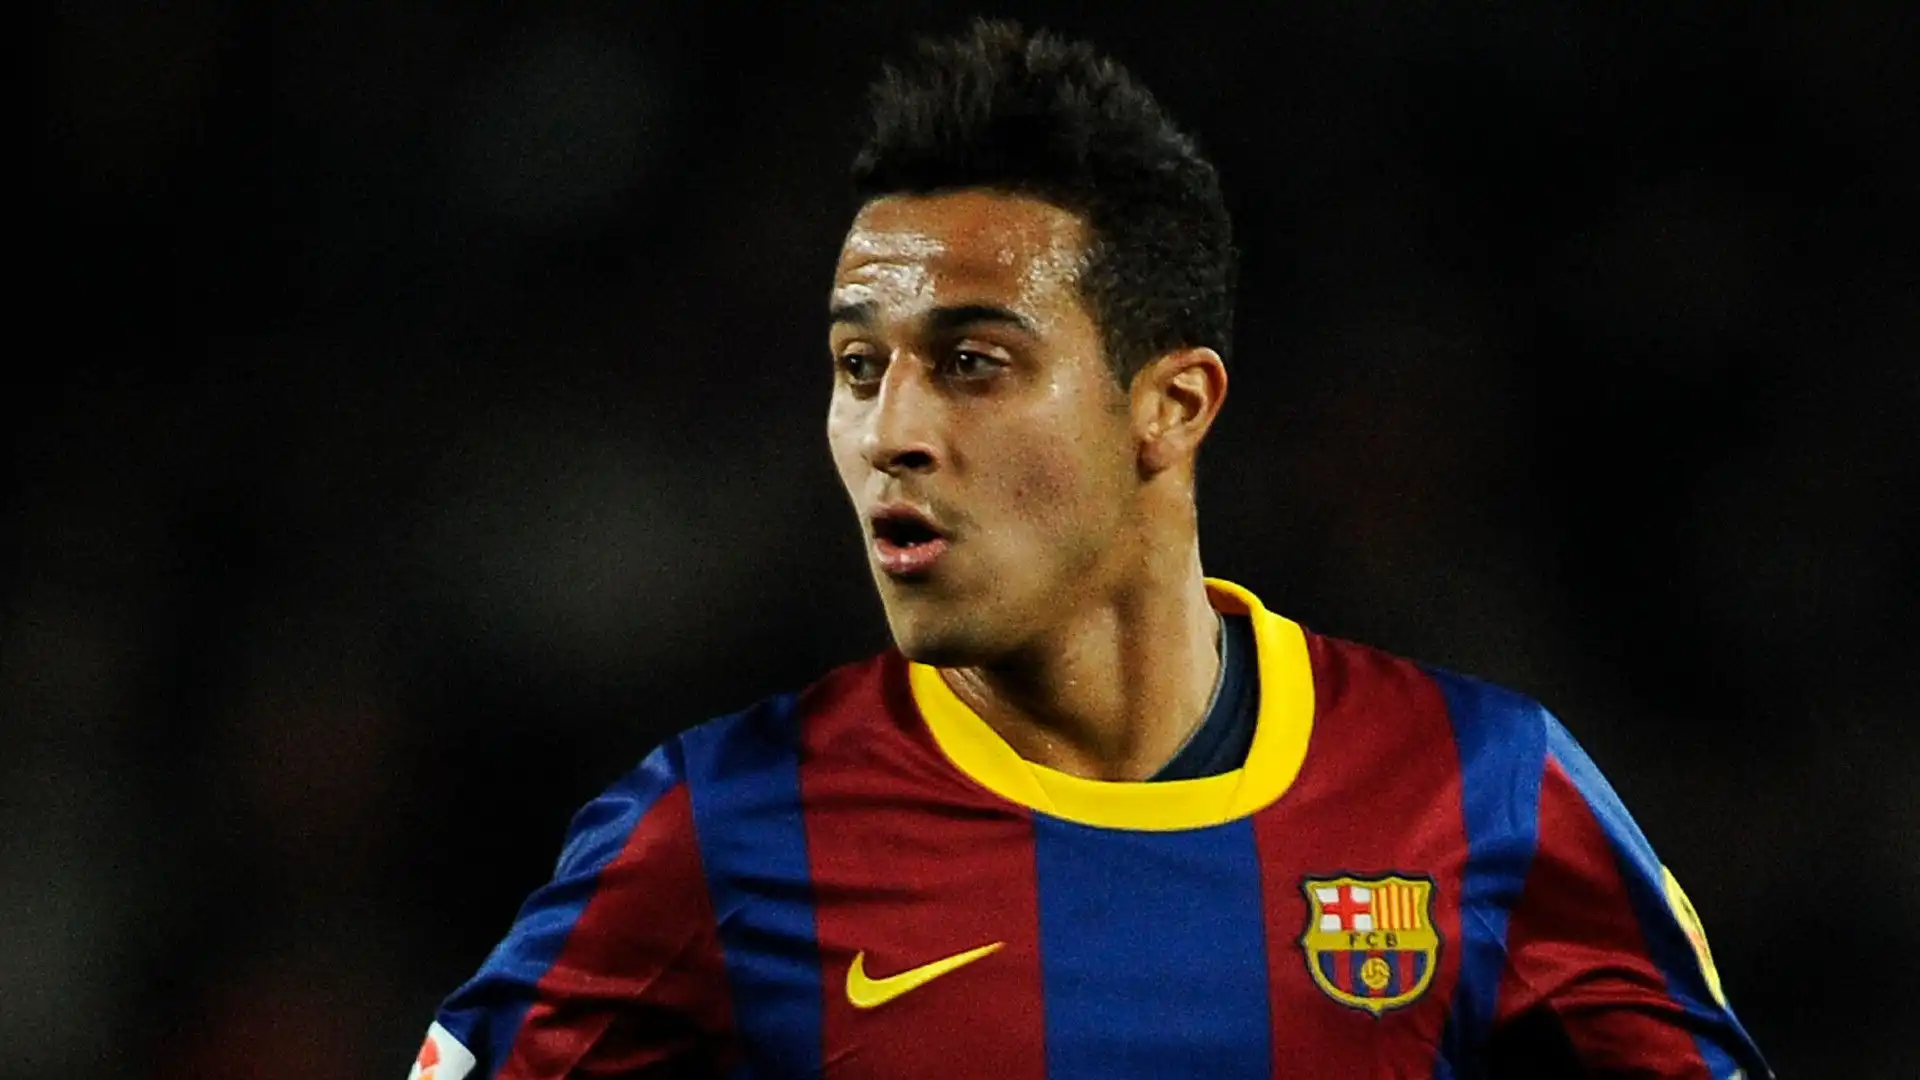 Inizia la carriera nel Barcellona B nel 2008 totalizzando 59 presenze e tre gol in quattro stagioni